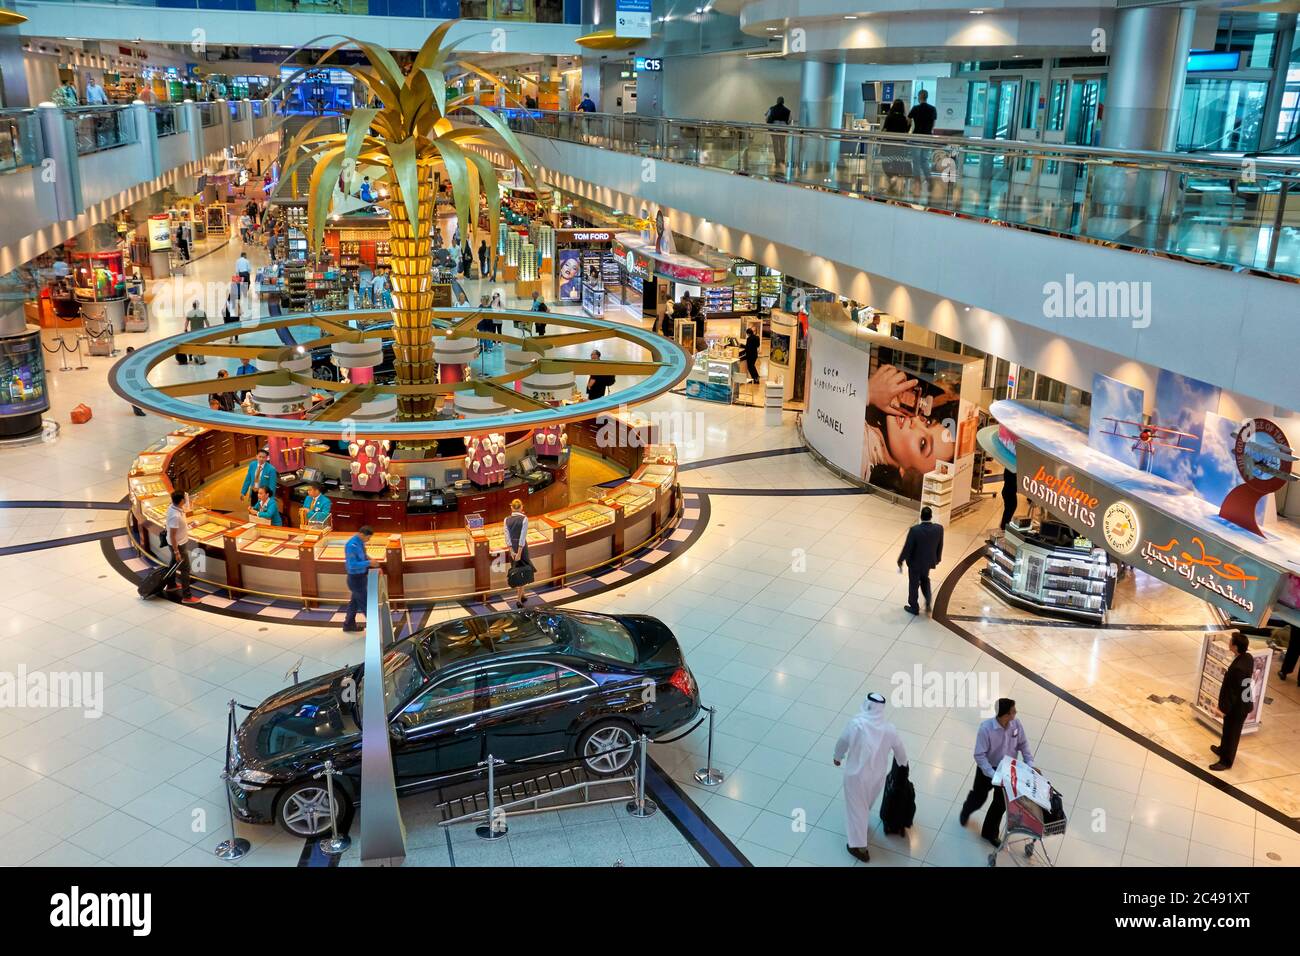 Vue imprenable sur la boutique hors taxes de luxe de l'aéroport  international de Dubaï, avec un stand vendant des bijoux en or au poids  dans le centre. Dubaï, Émirats arabes Unis Photo